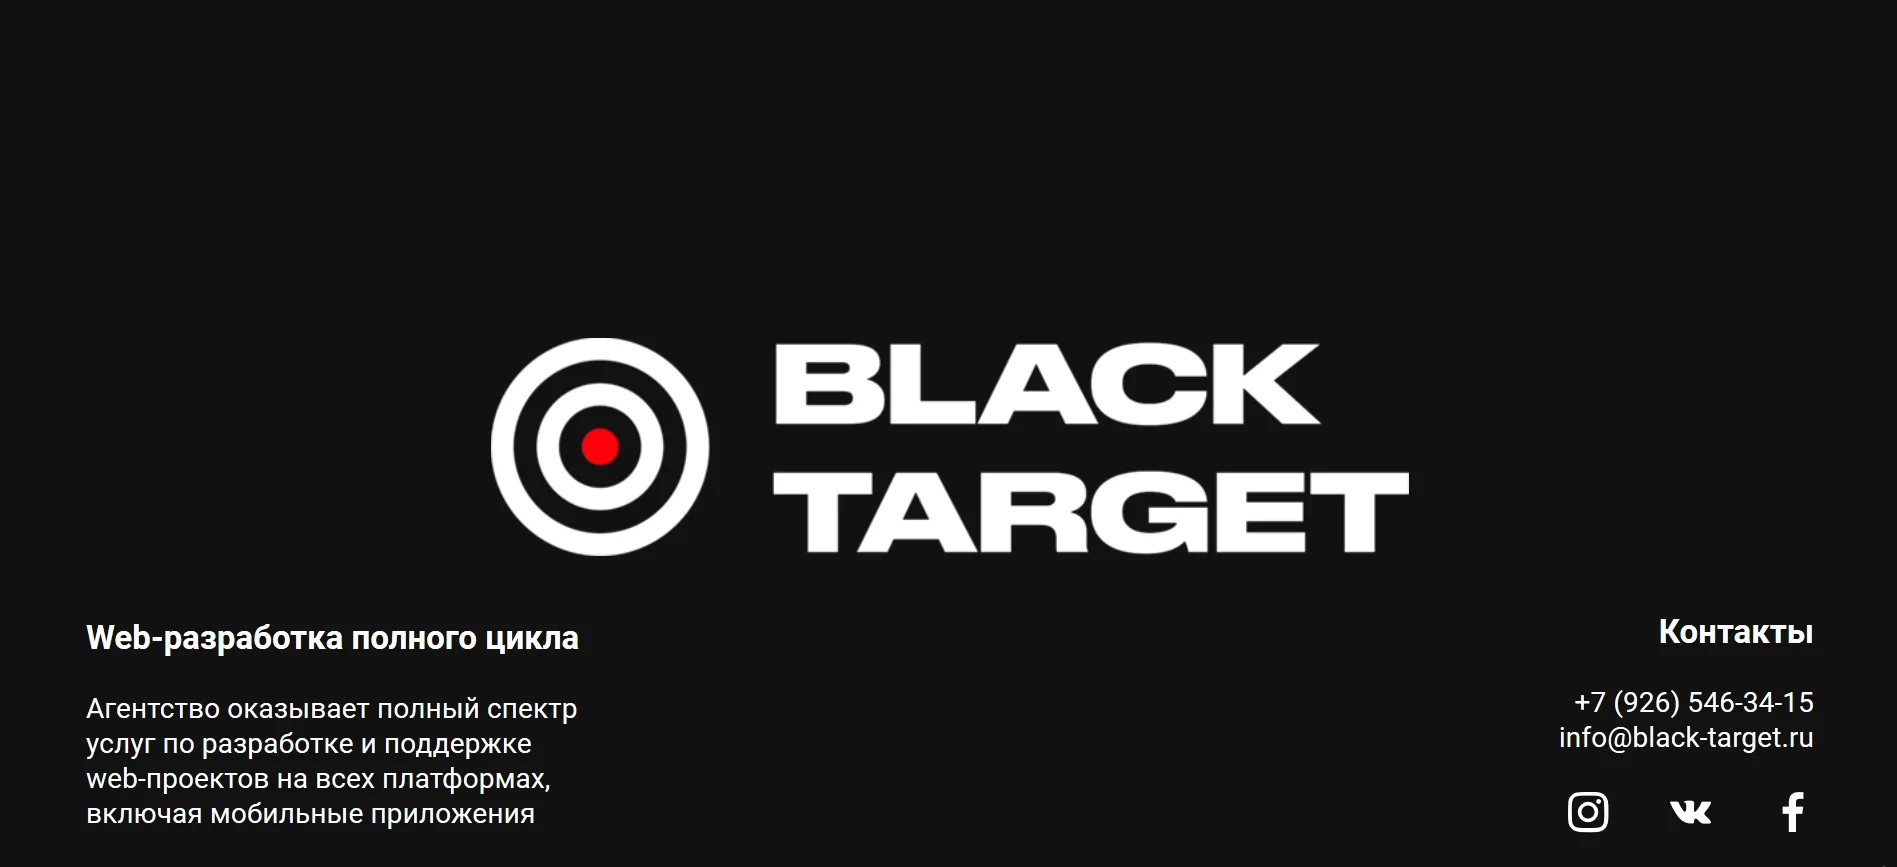 Основанная Тимати компания Black Star украла целый сайт по веб-разработке - фото 5